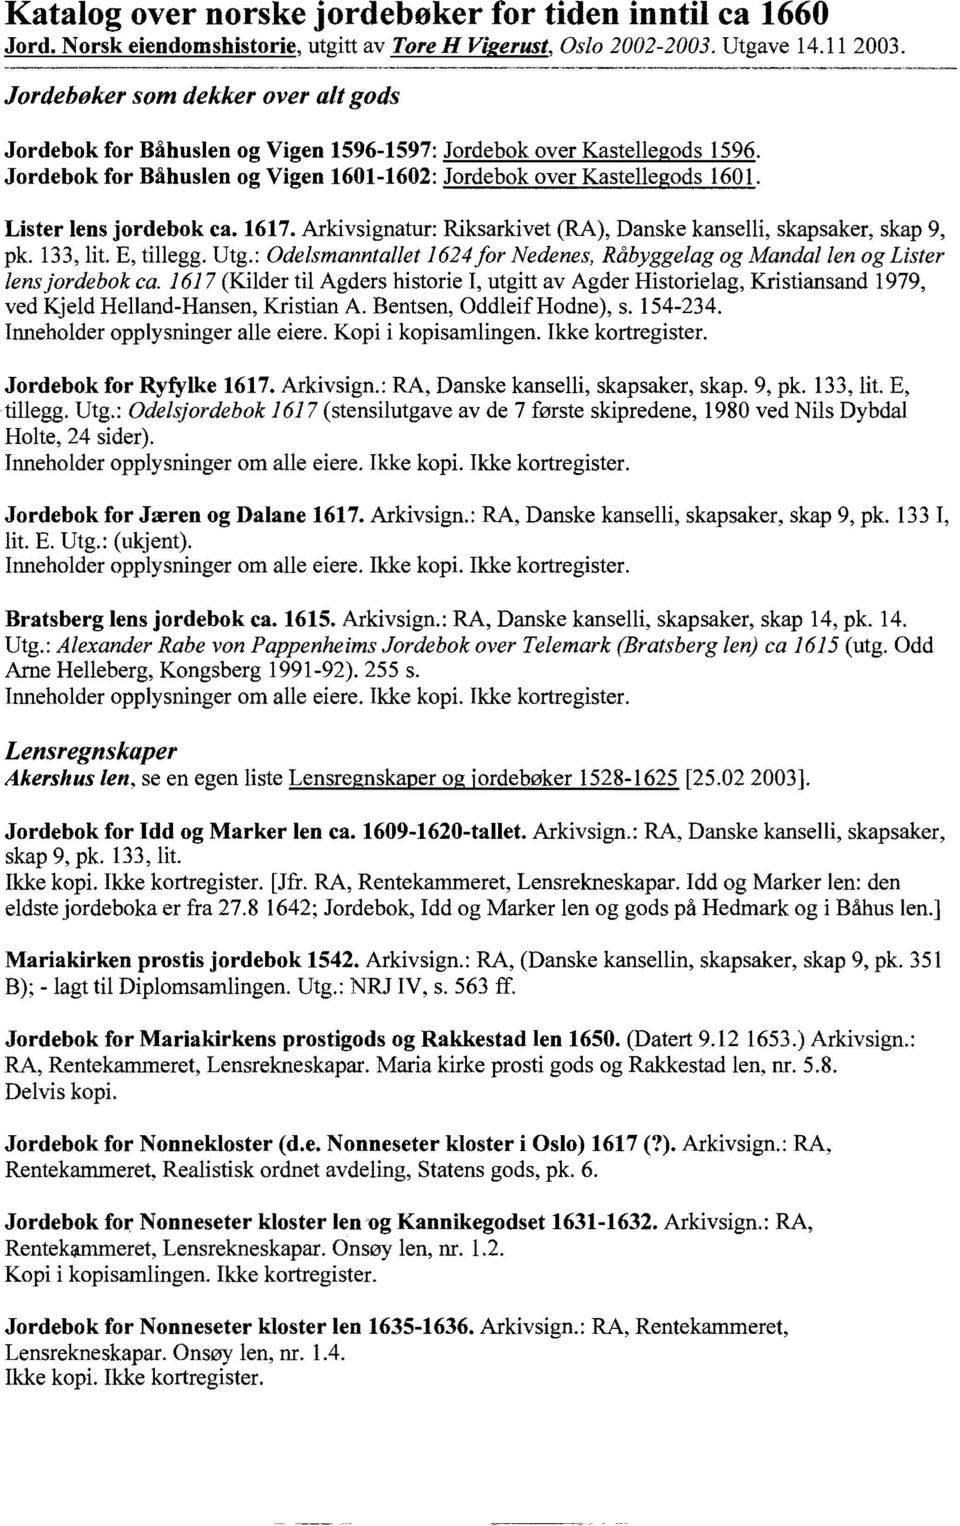 Jordebok for Båhuslen og Vigen 1601-1602: Jordebok over Kastellegods 1601. Lister lens jordebok ca. 1617. Arkivsignatur: Riksarkivet (RA), Danske kanselli, skapsaker, skap 9, pk. 133, lit E, tillegg.